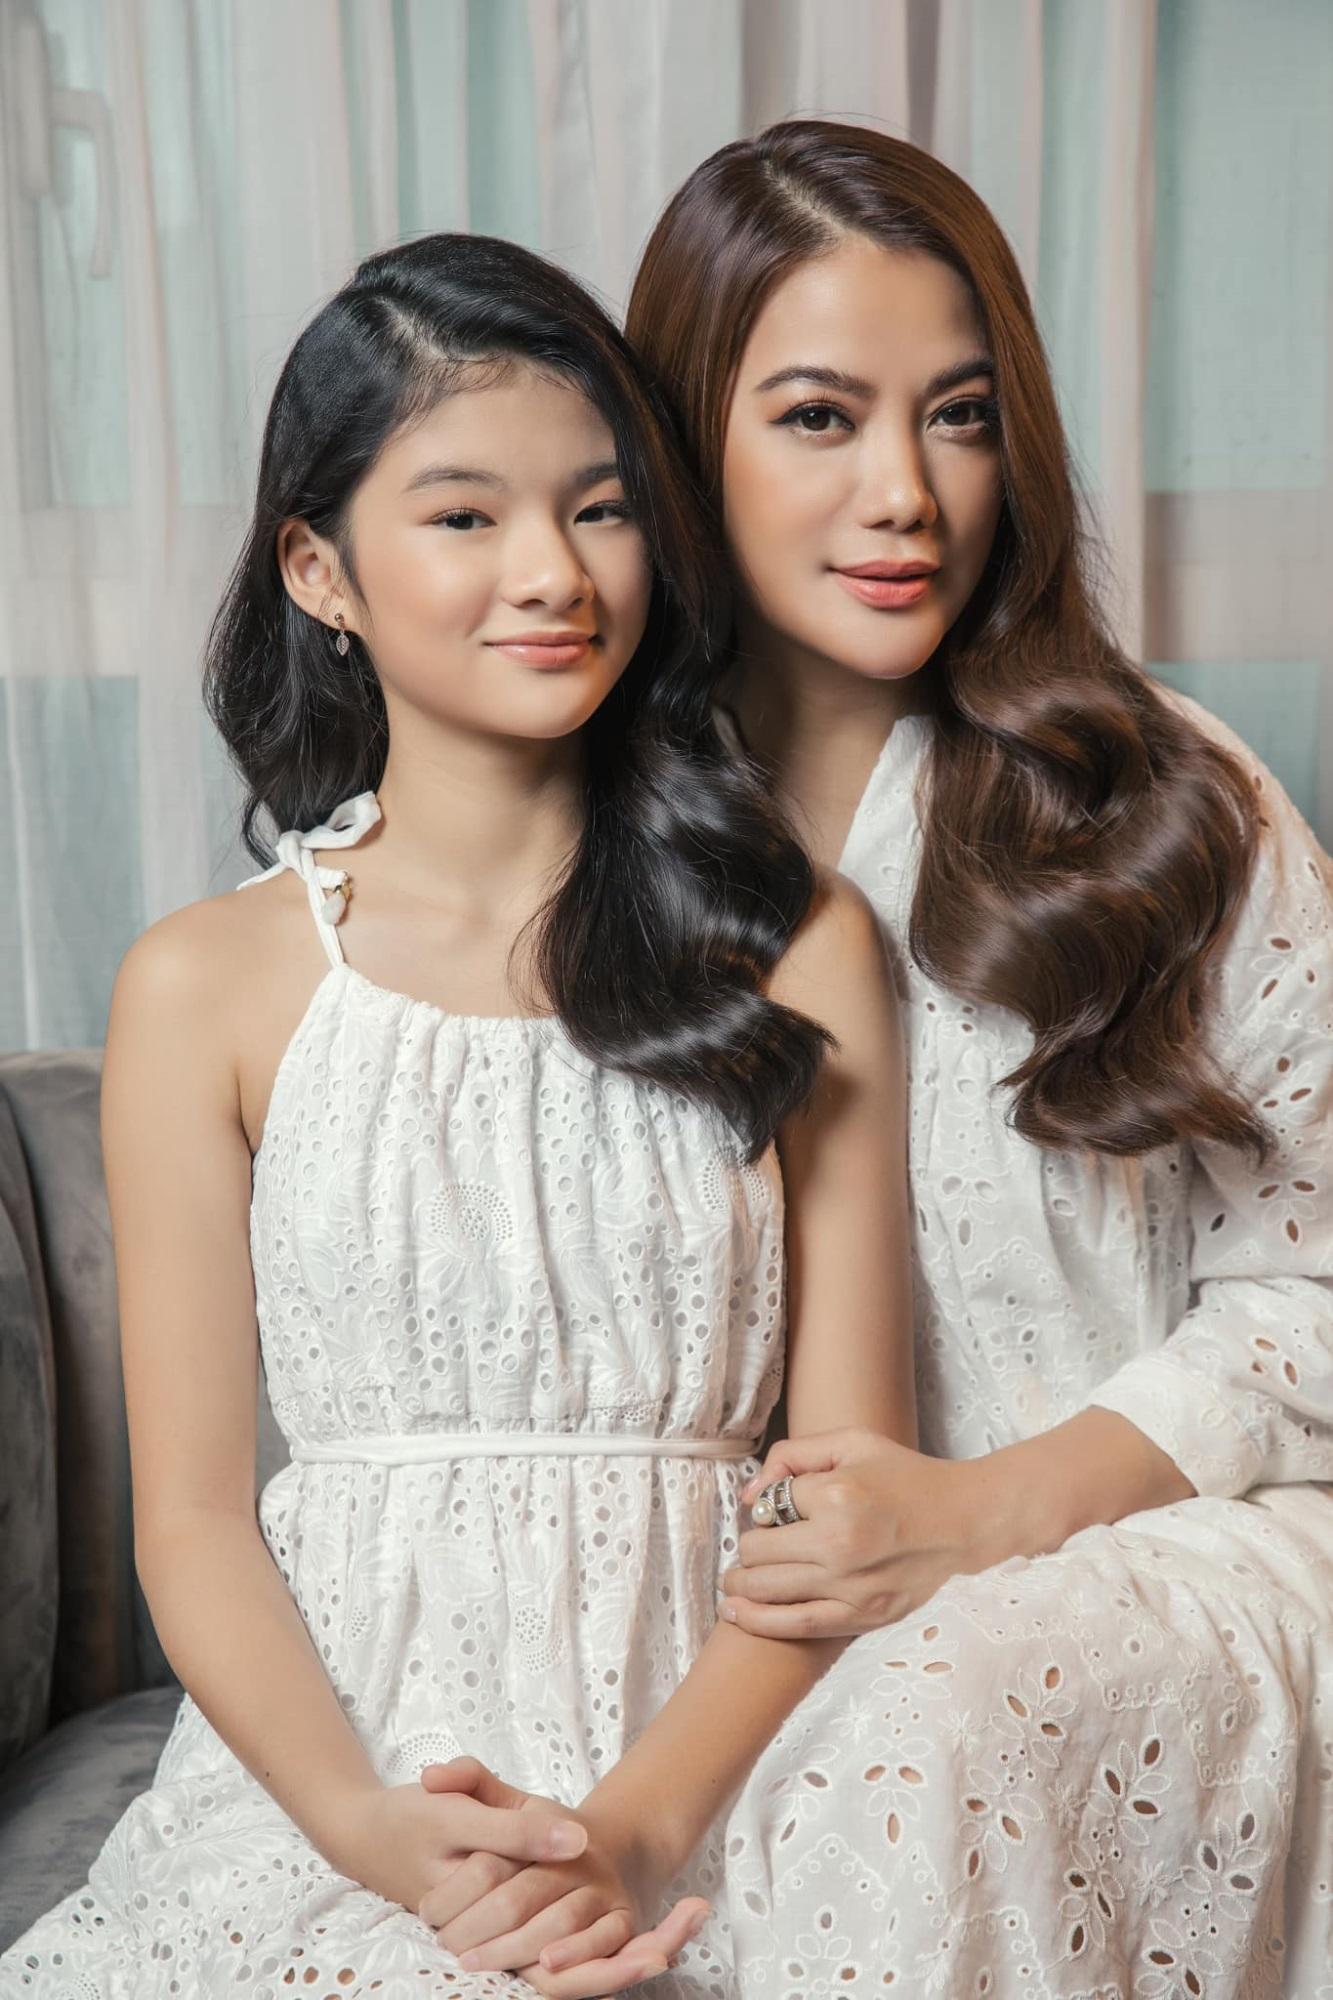 Nhan sắc tuổi đôi mươi nổi bật của ái nữ nhà sao Việt, được ủng hộ nối nghiệp bố mẹ-9